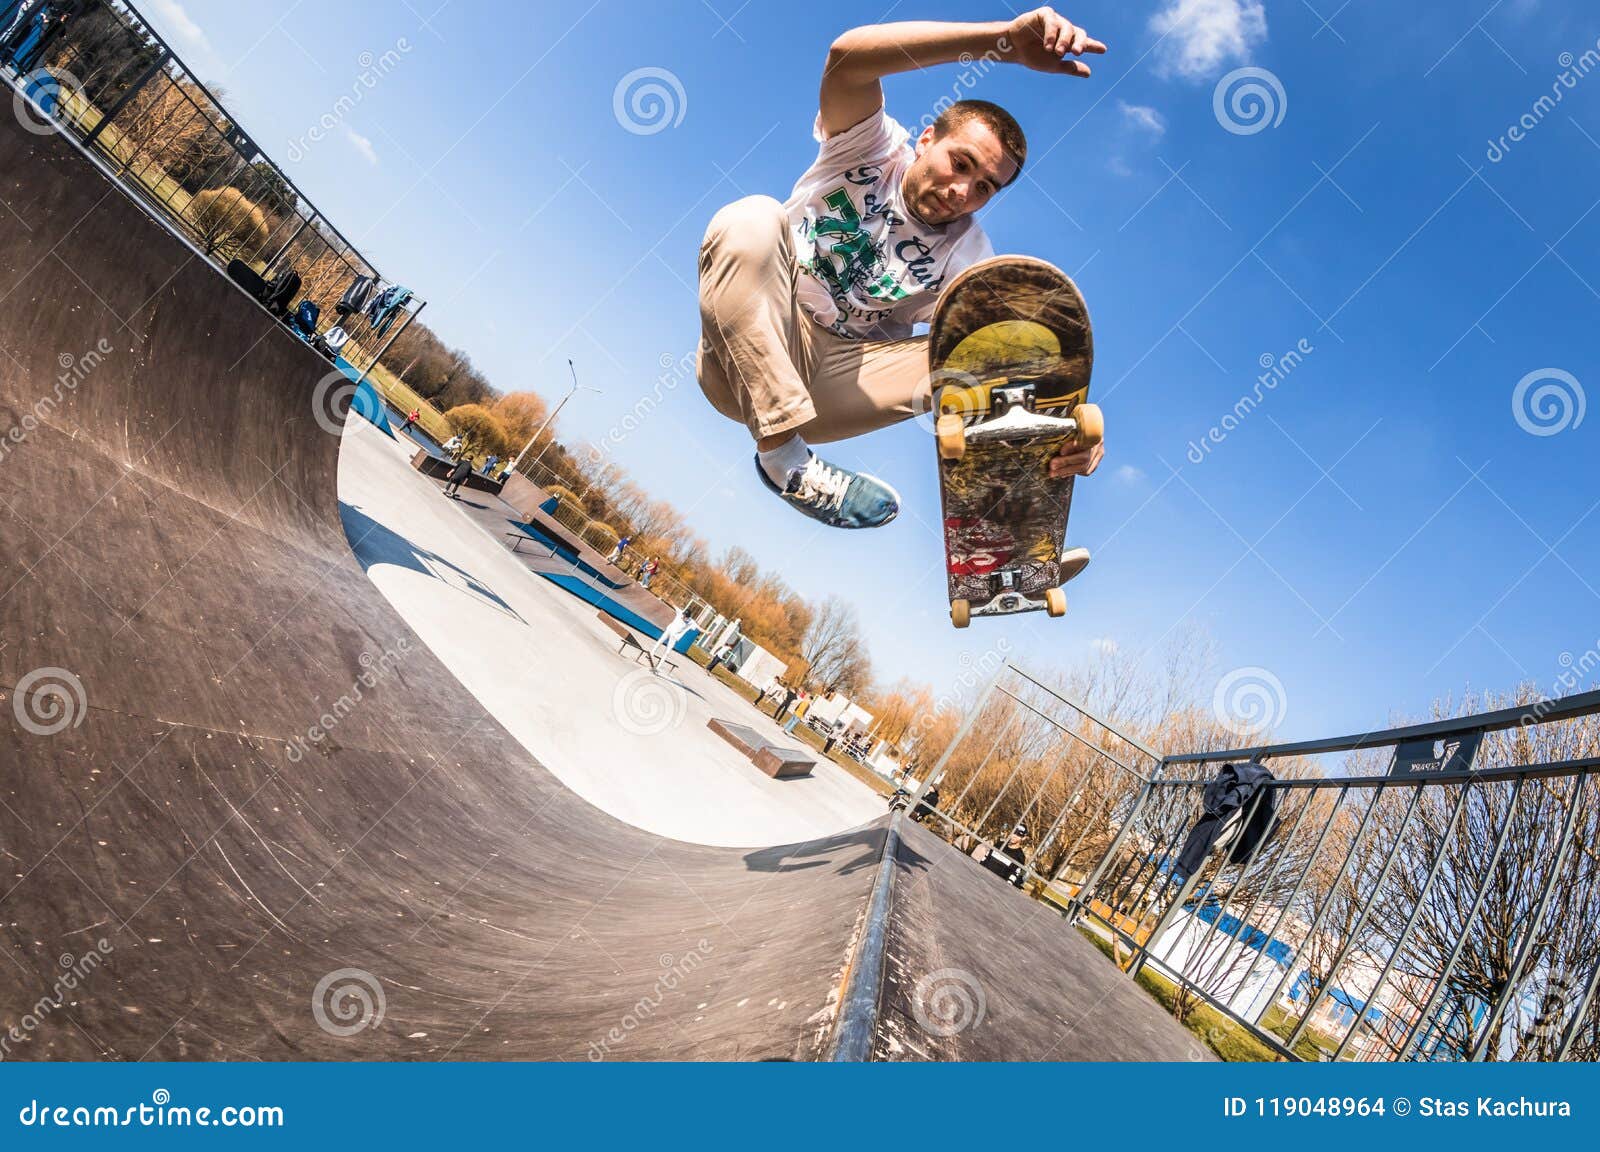 Skateboarder Make Trick Boneless, Jump in Mini Ramp in Skatepark Stock Photo - Image of rider, skatejune2018: 119048964